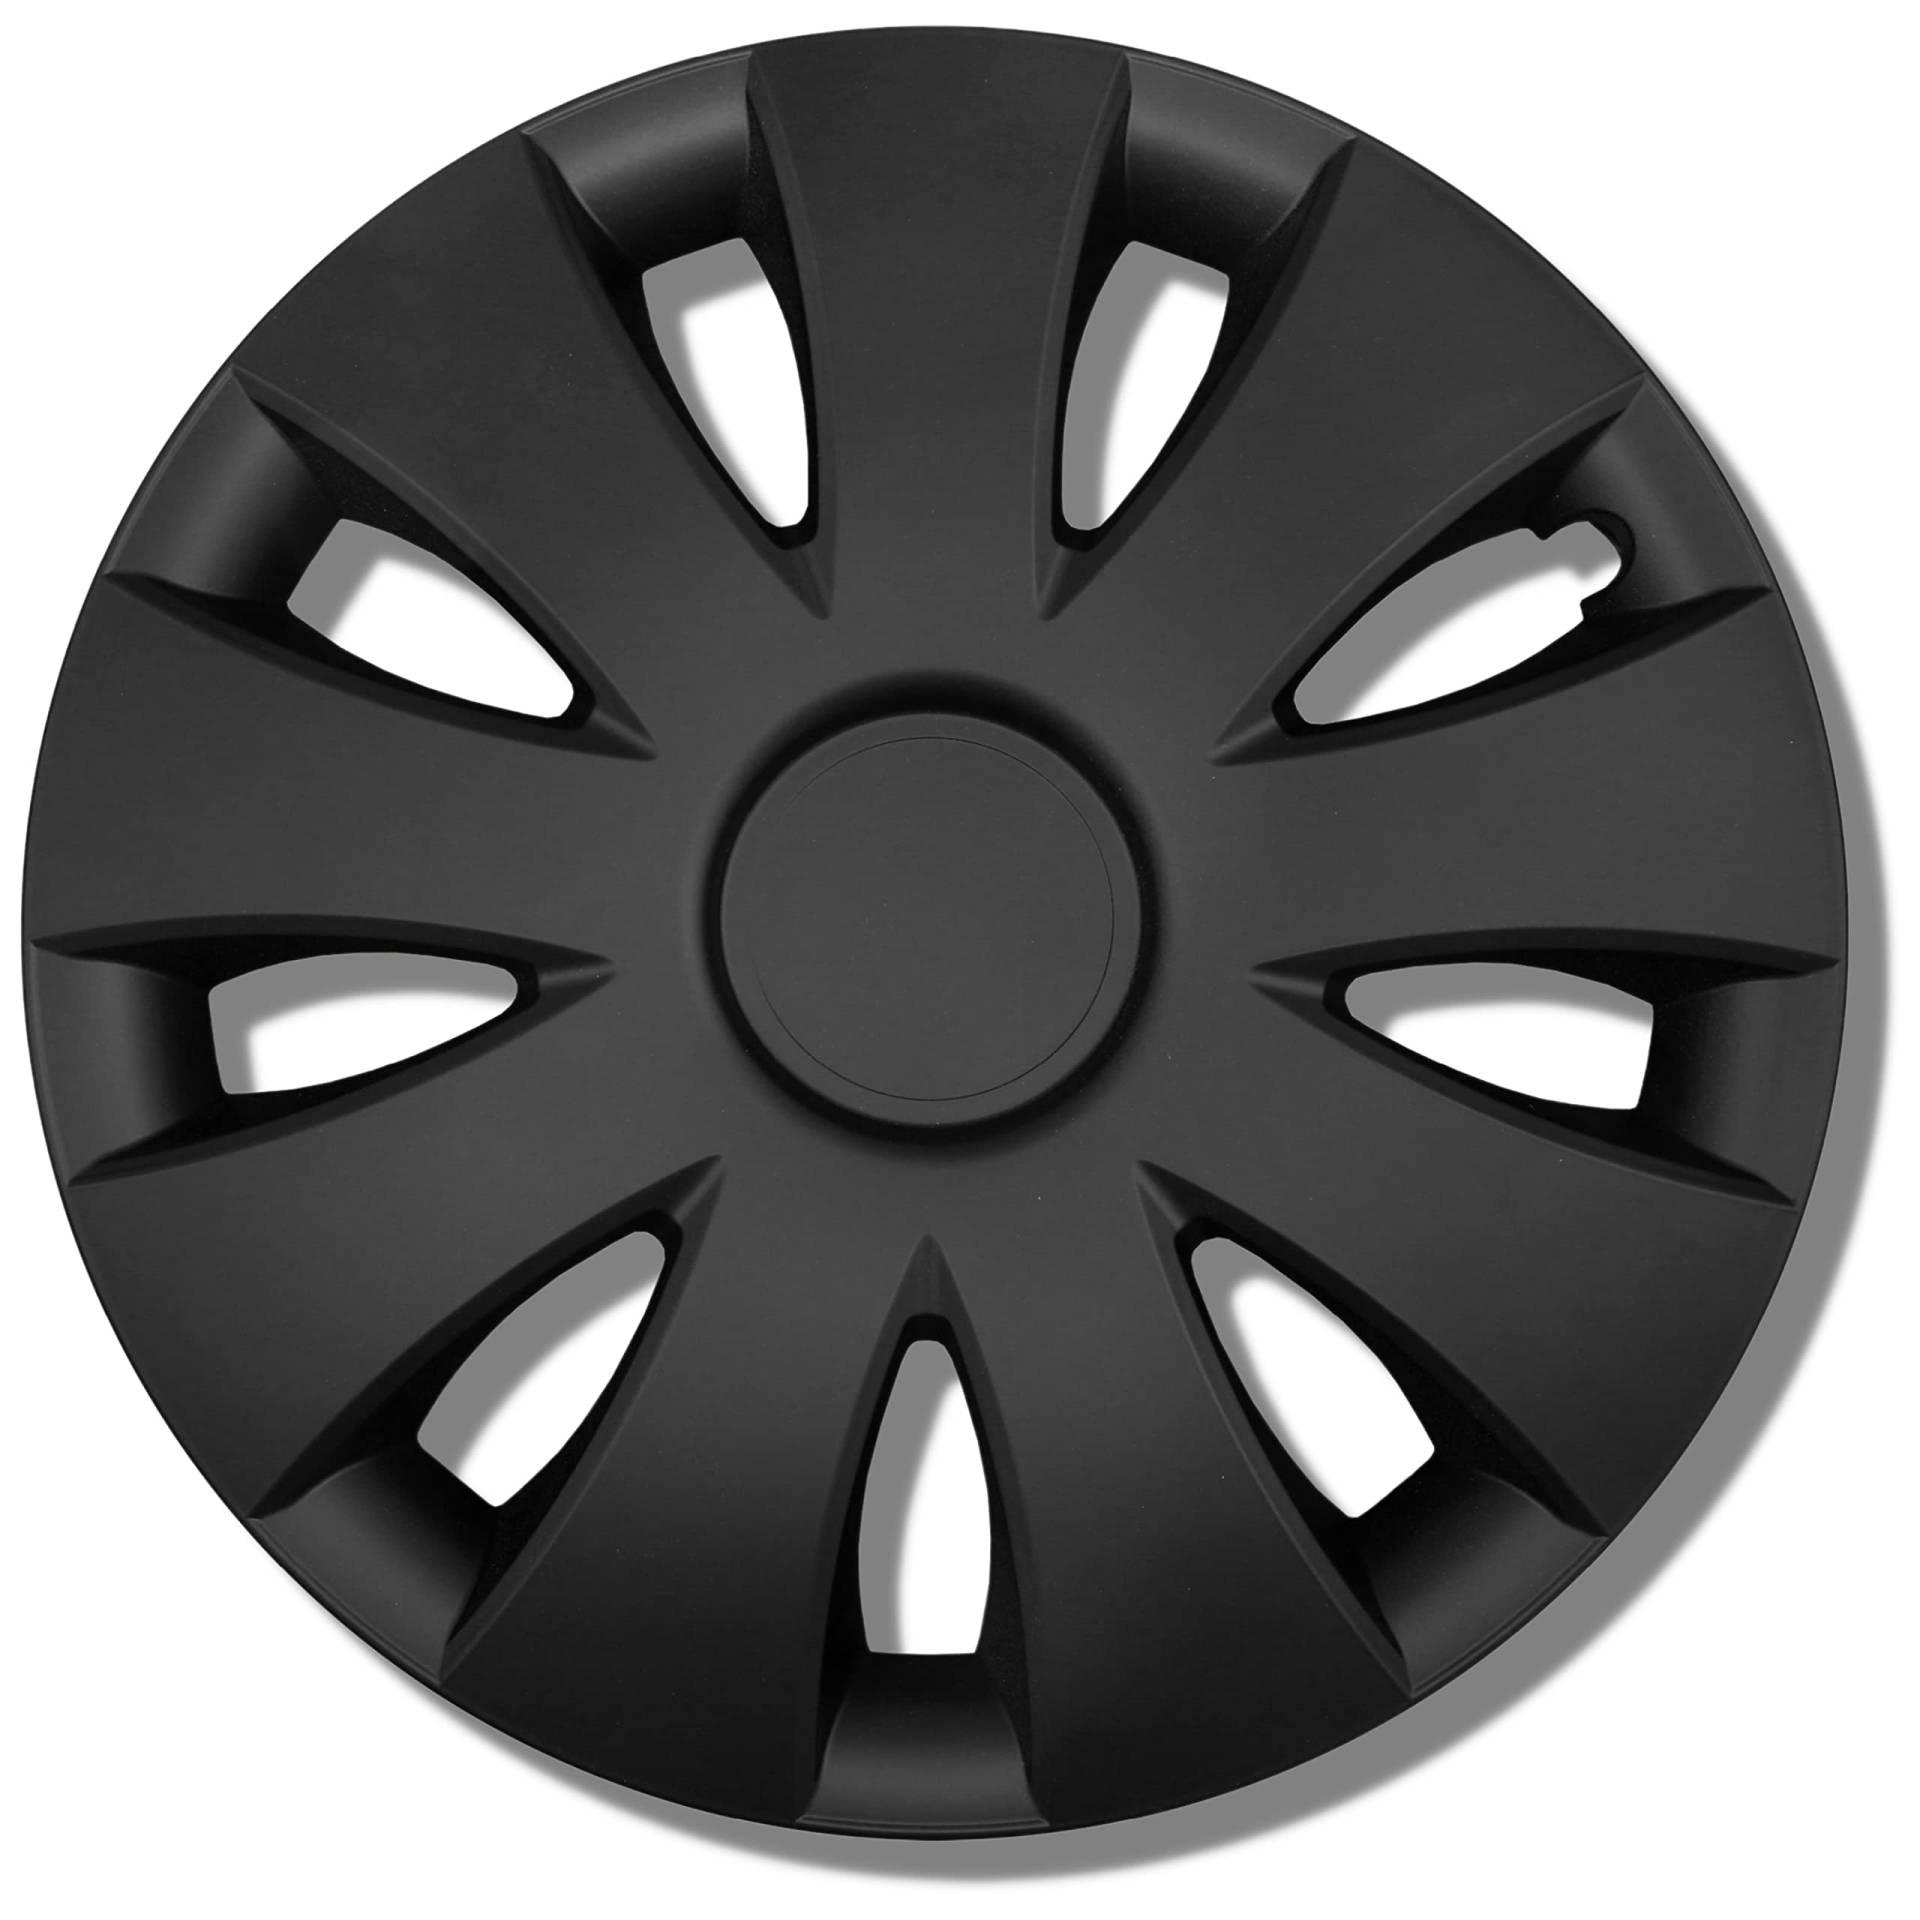 Radkappen schwarz matt 14 Zoll - Radzierblenden für Stahlfelgen - Alufelgen Look Radblenden Für die meisten Marken und Felgen - Europäisches Produkt aus recyceltem Kunststoff - 4er Set Zierkappen von Kuglo